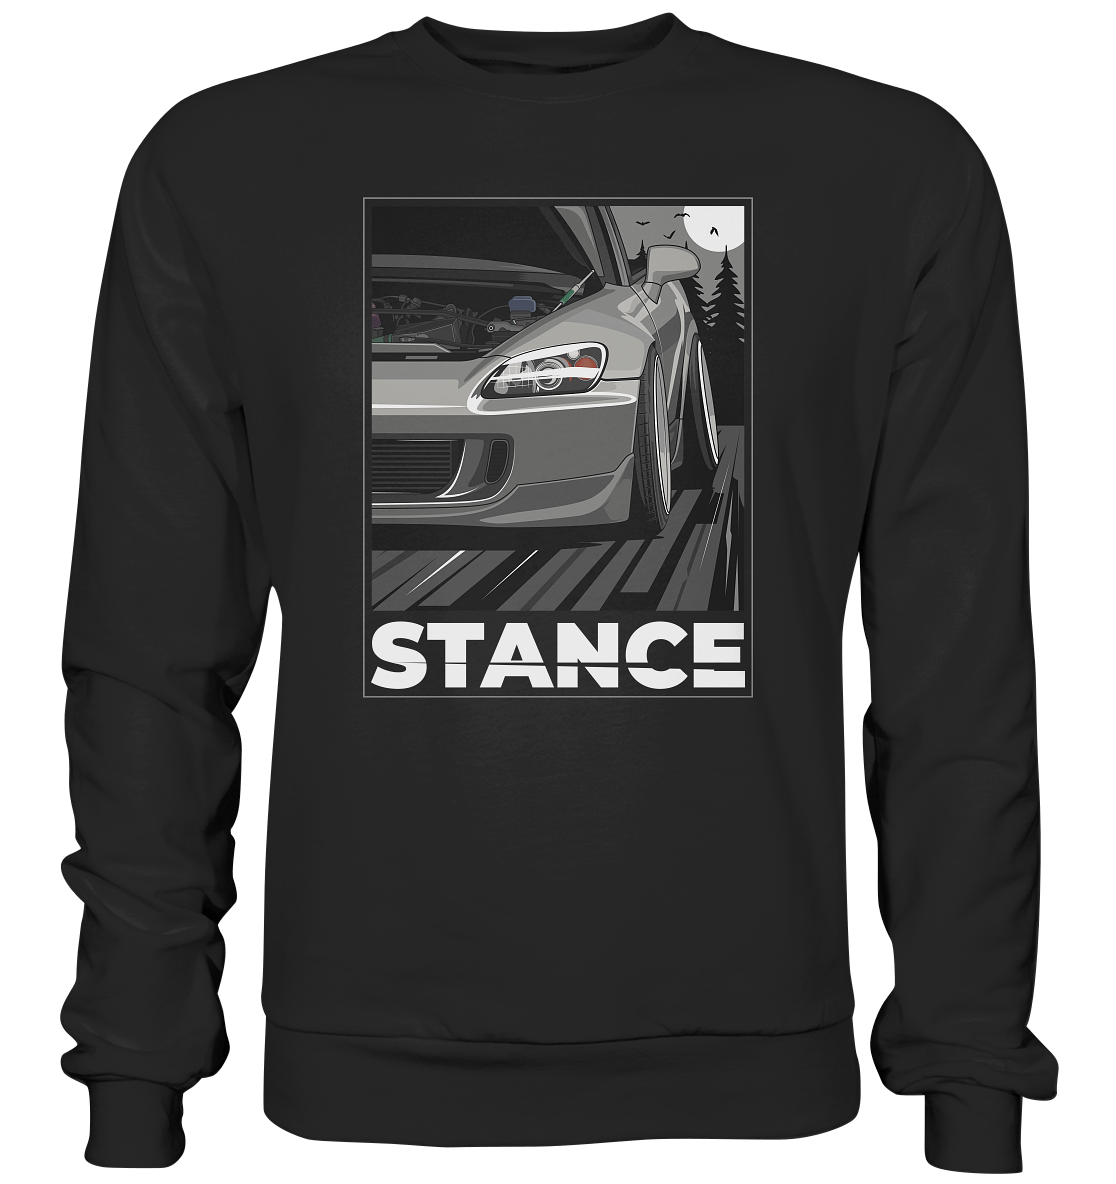 S2000 Stance - Premium Sweatshirt - MotoMerch.de